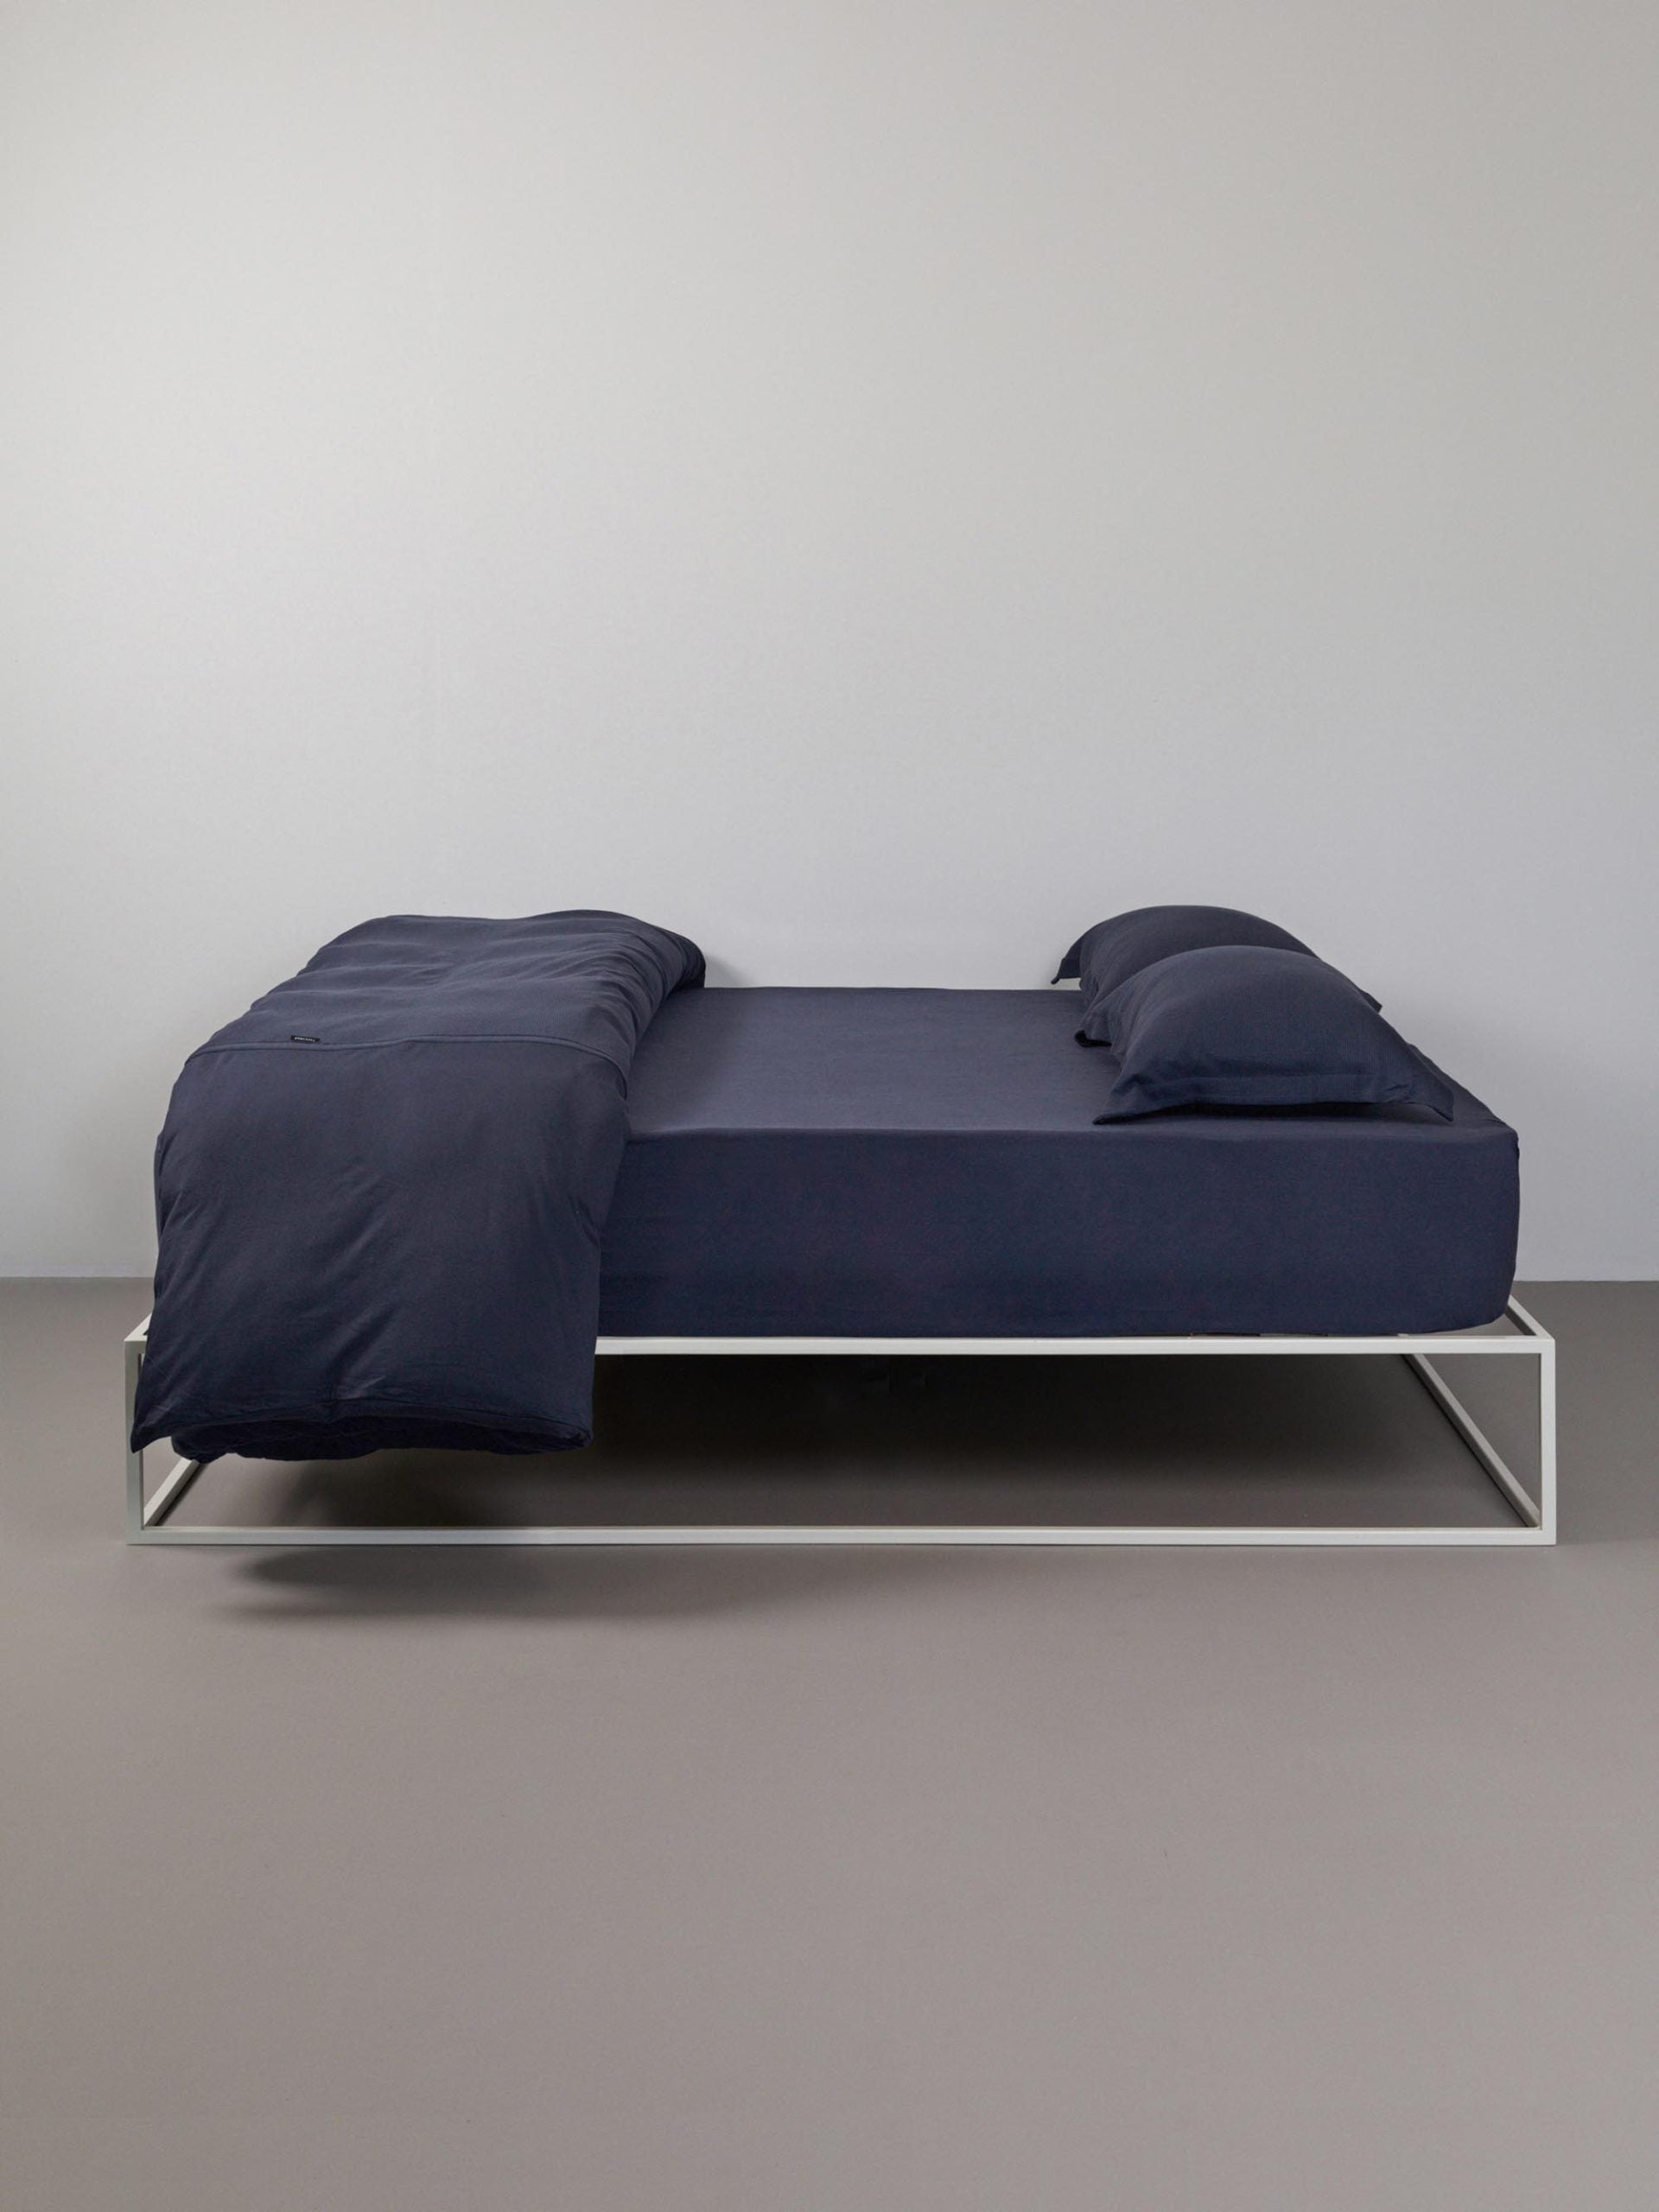 מיטת ברזל לבנה עם מצעים הכוללים סדין, שמיכת פוך עם ציפה לשמיכה כרית וציפית לכרית בצבע כחול